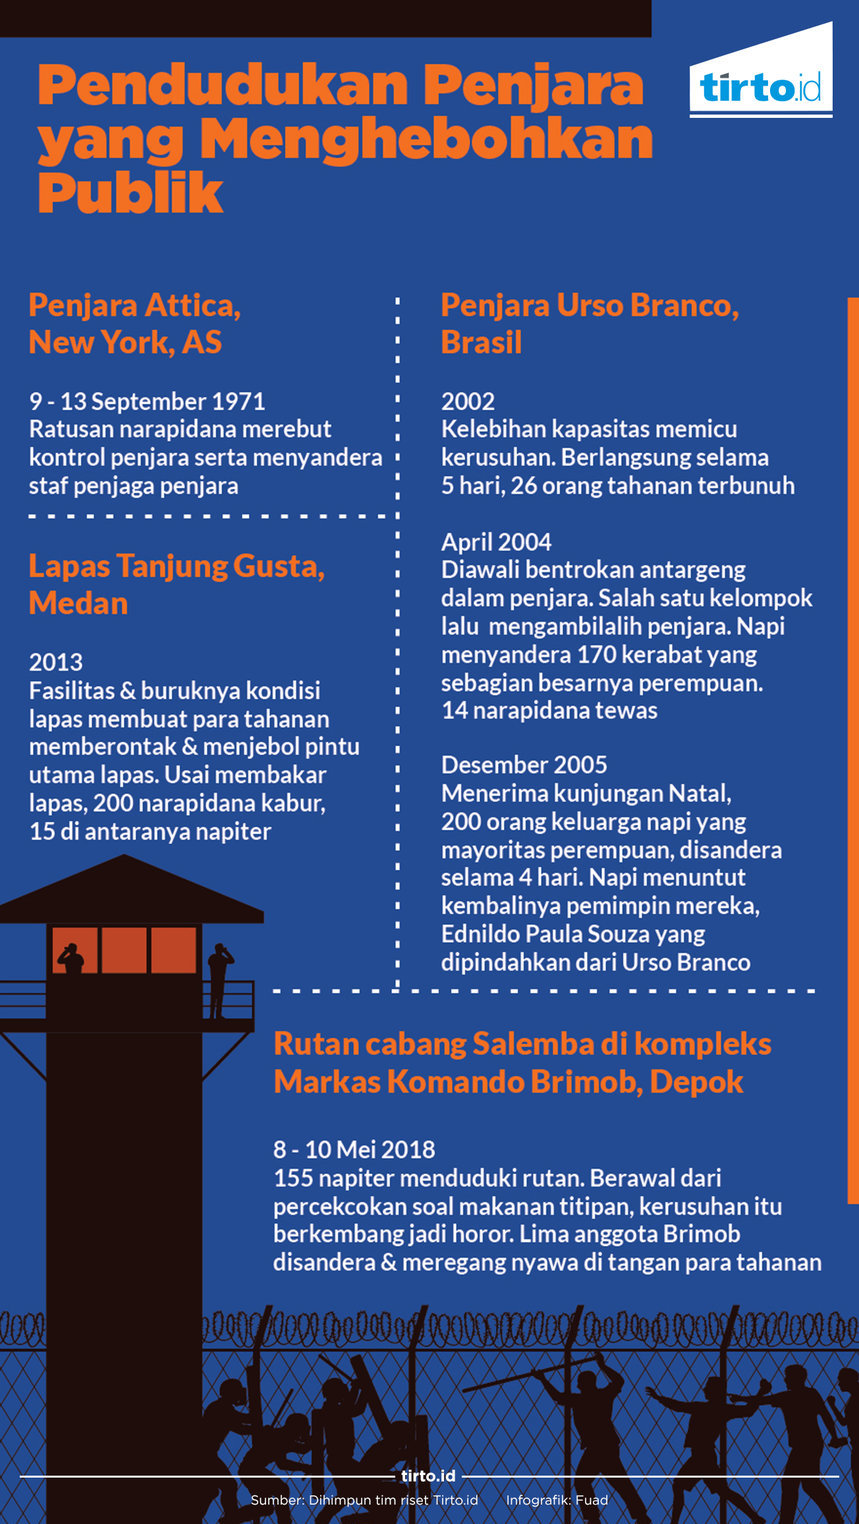 Infografik Penduduk penjara yang menghebohkan publik